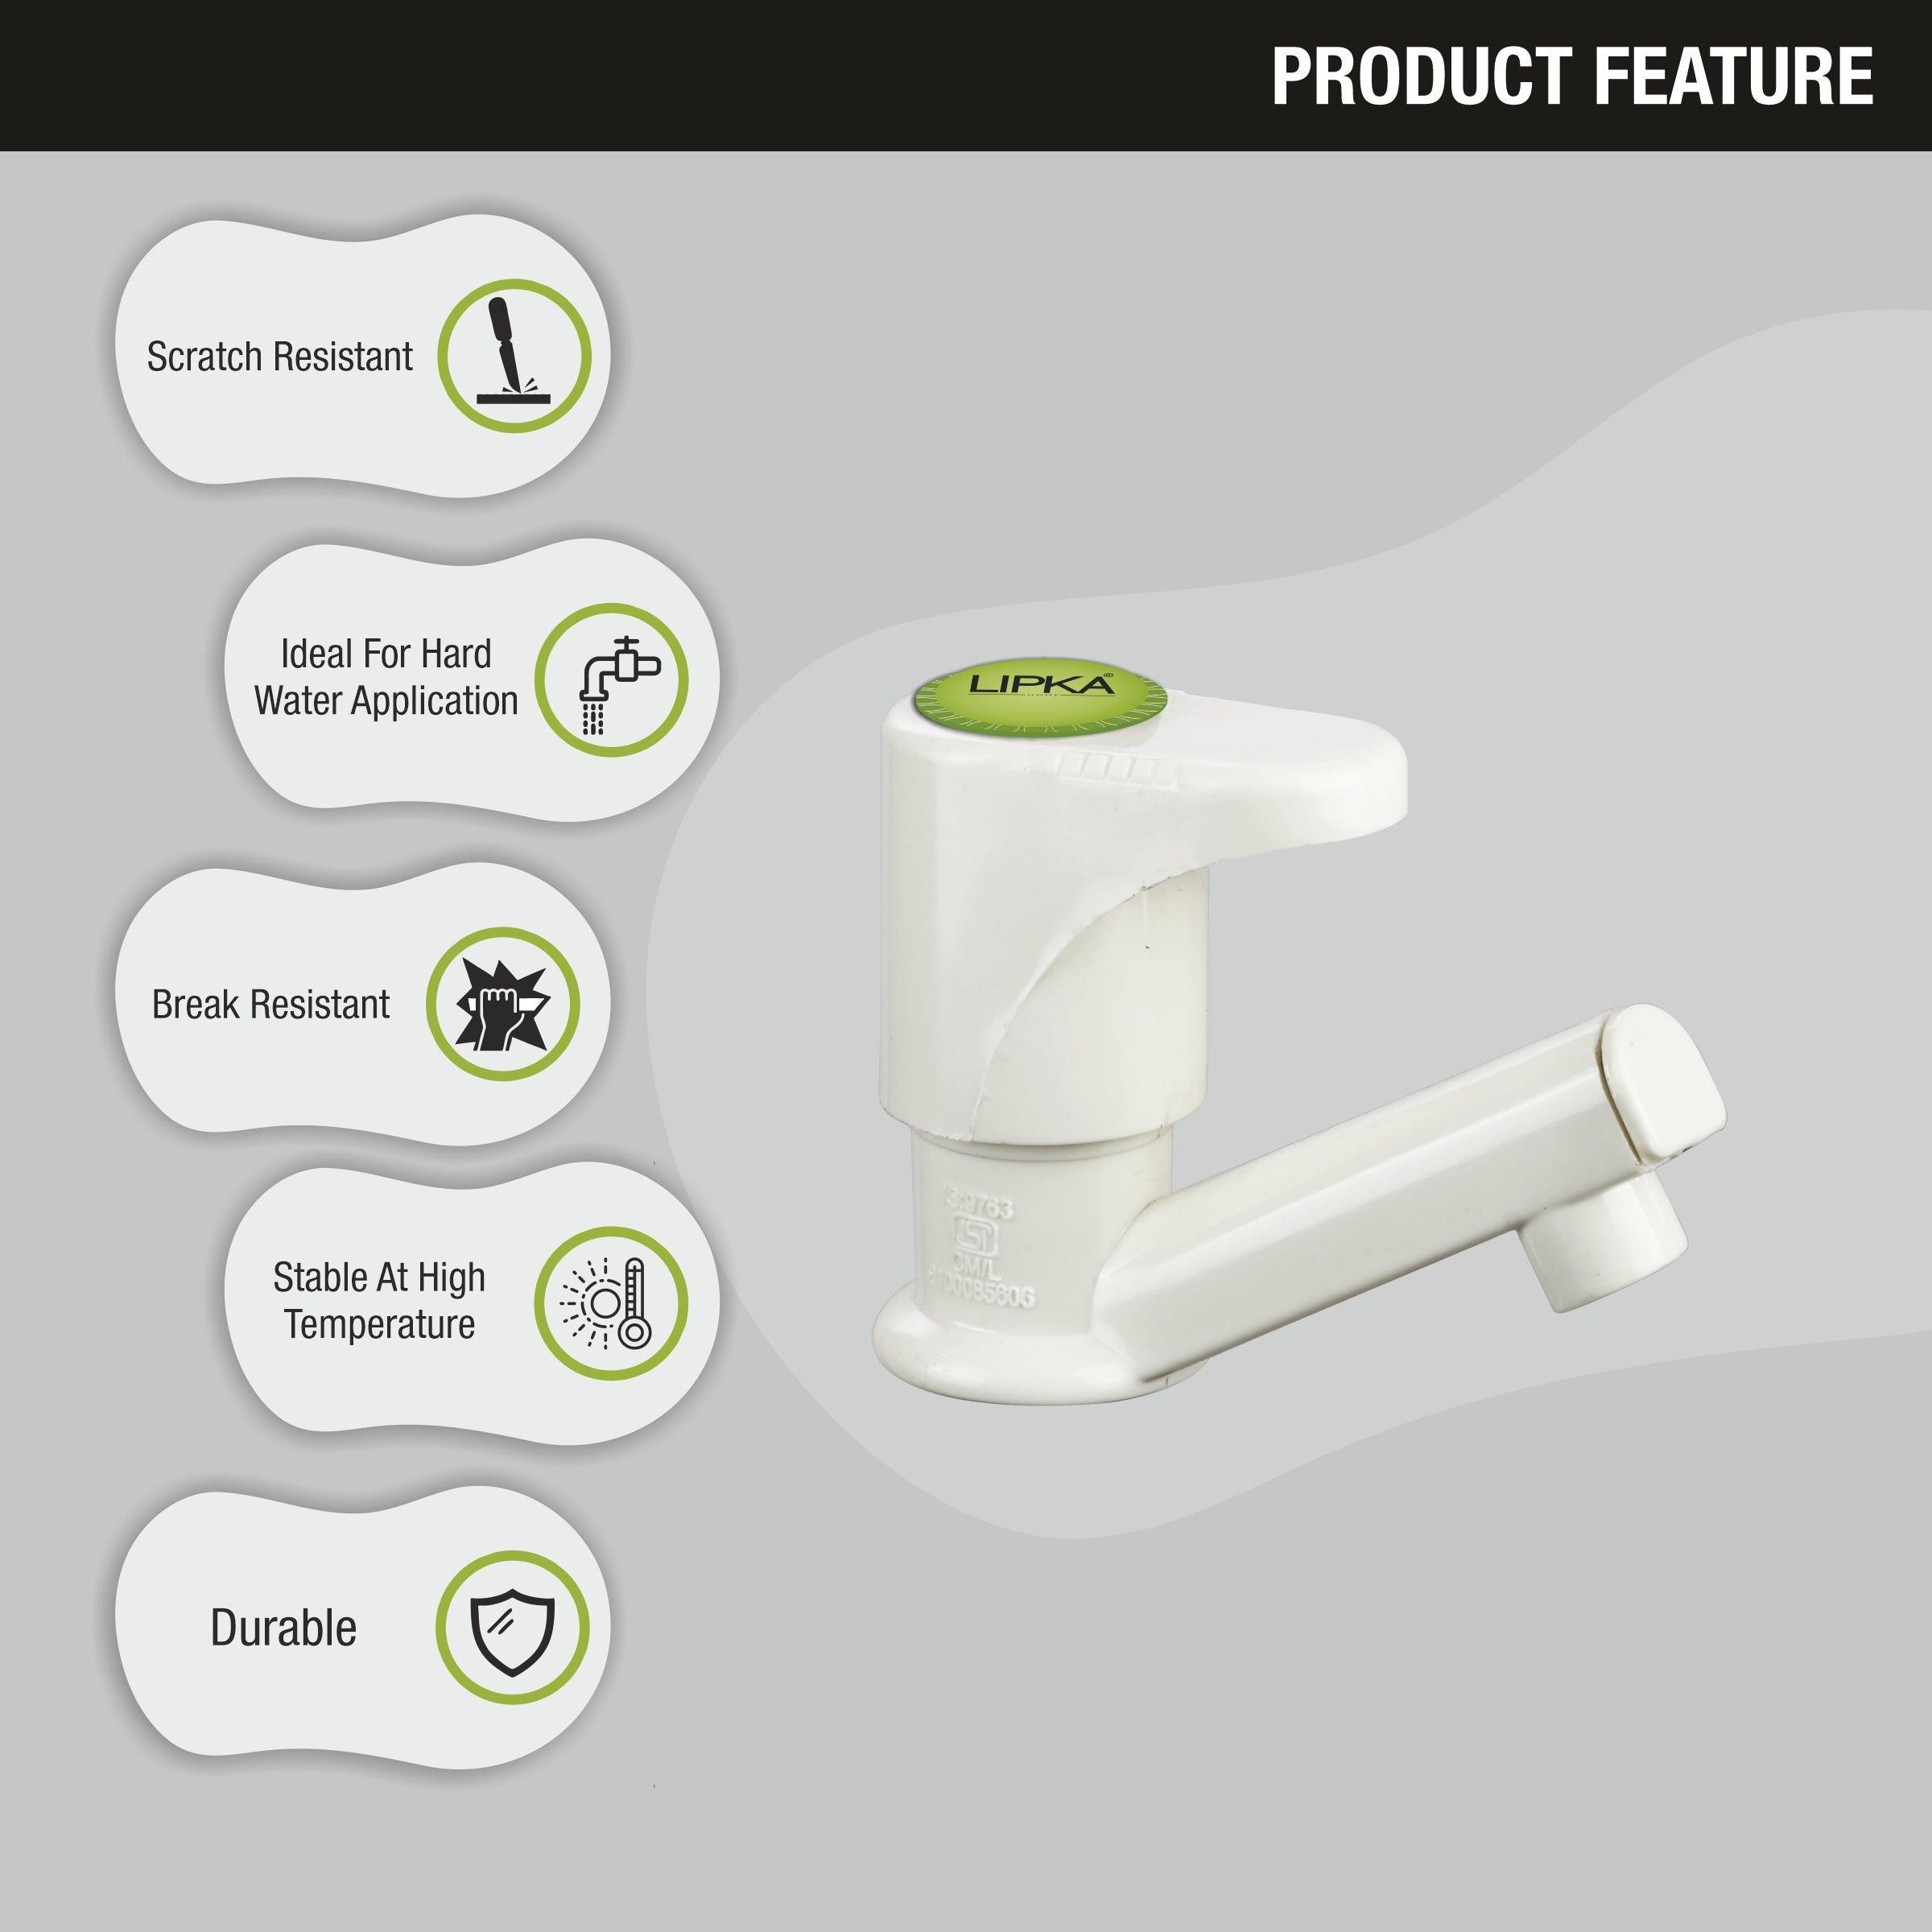 Designo Pillar Tap PTMT Faucet features